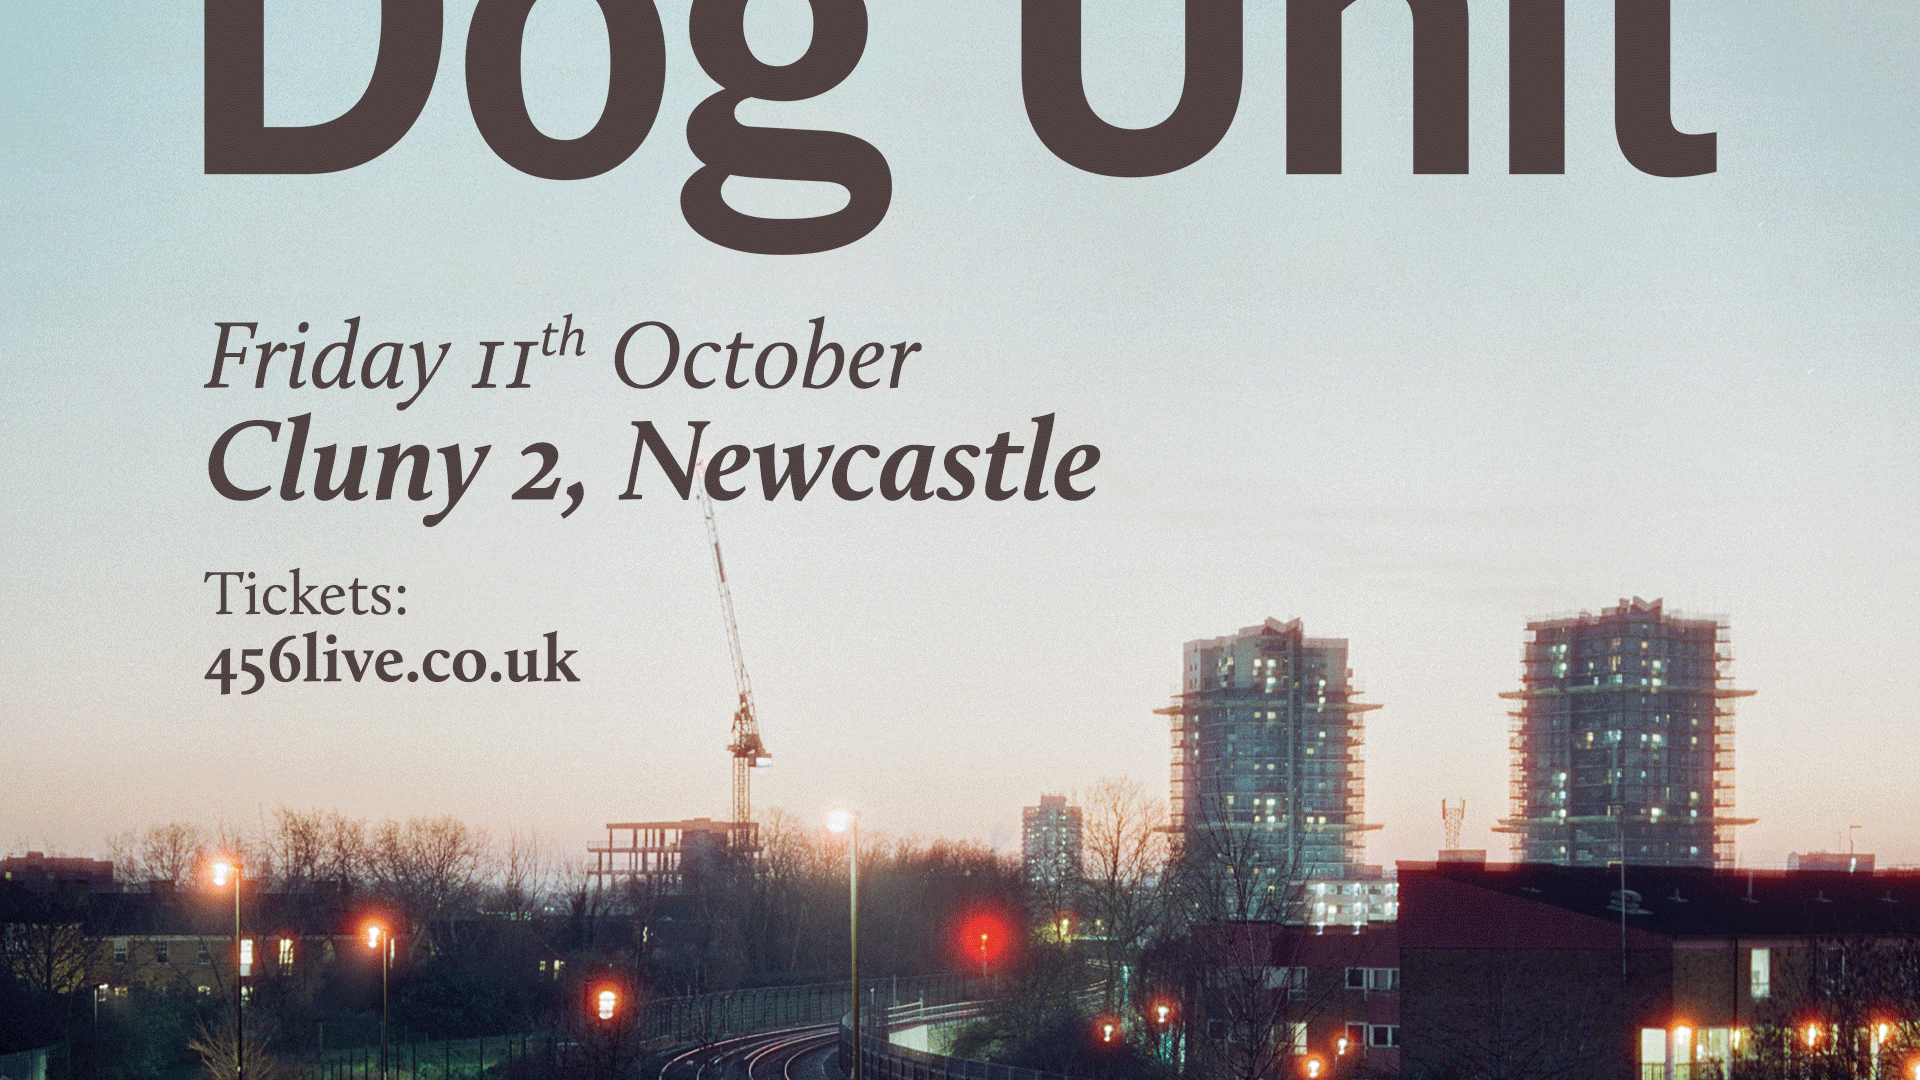 Dog Unit | Newcastle